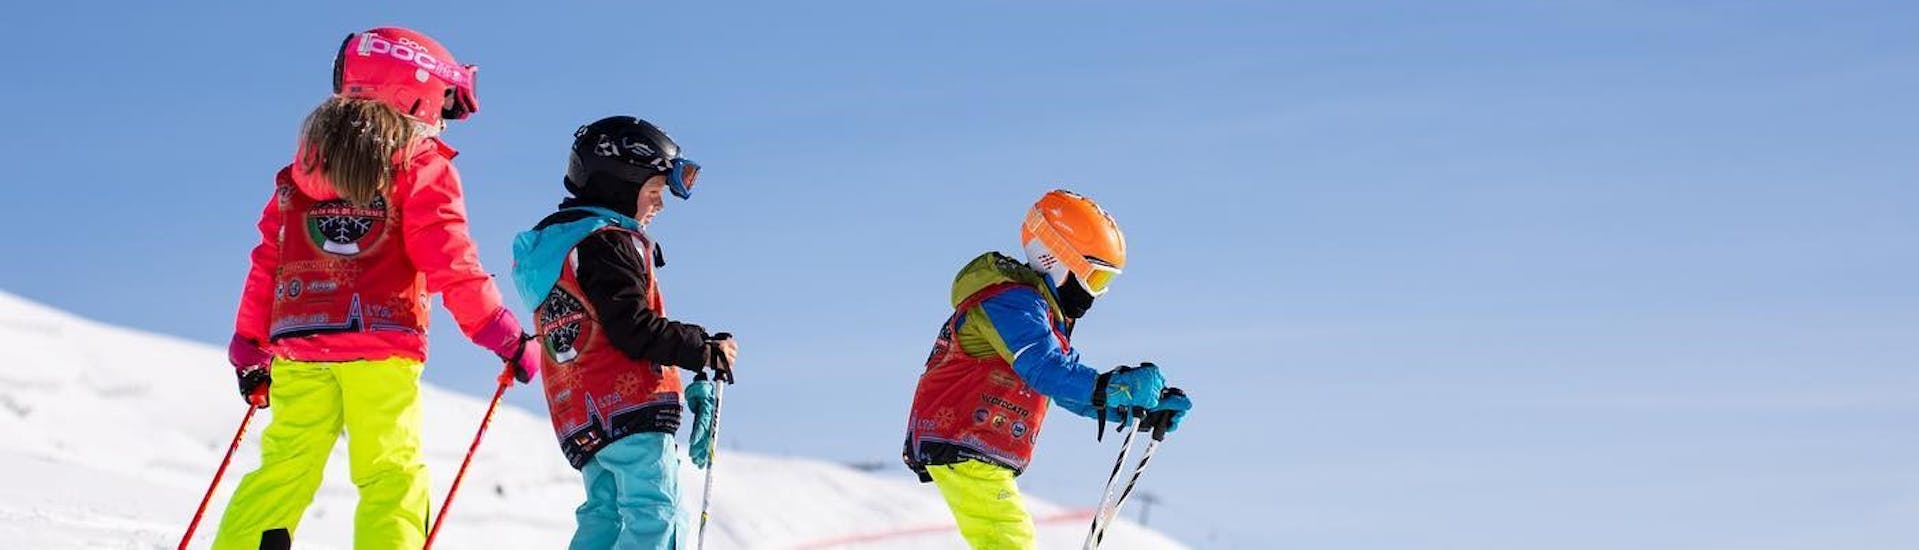 Clases de esquí para niños a partir de 5 años para todos los niveles.